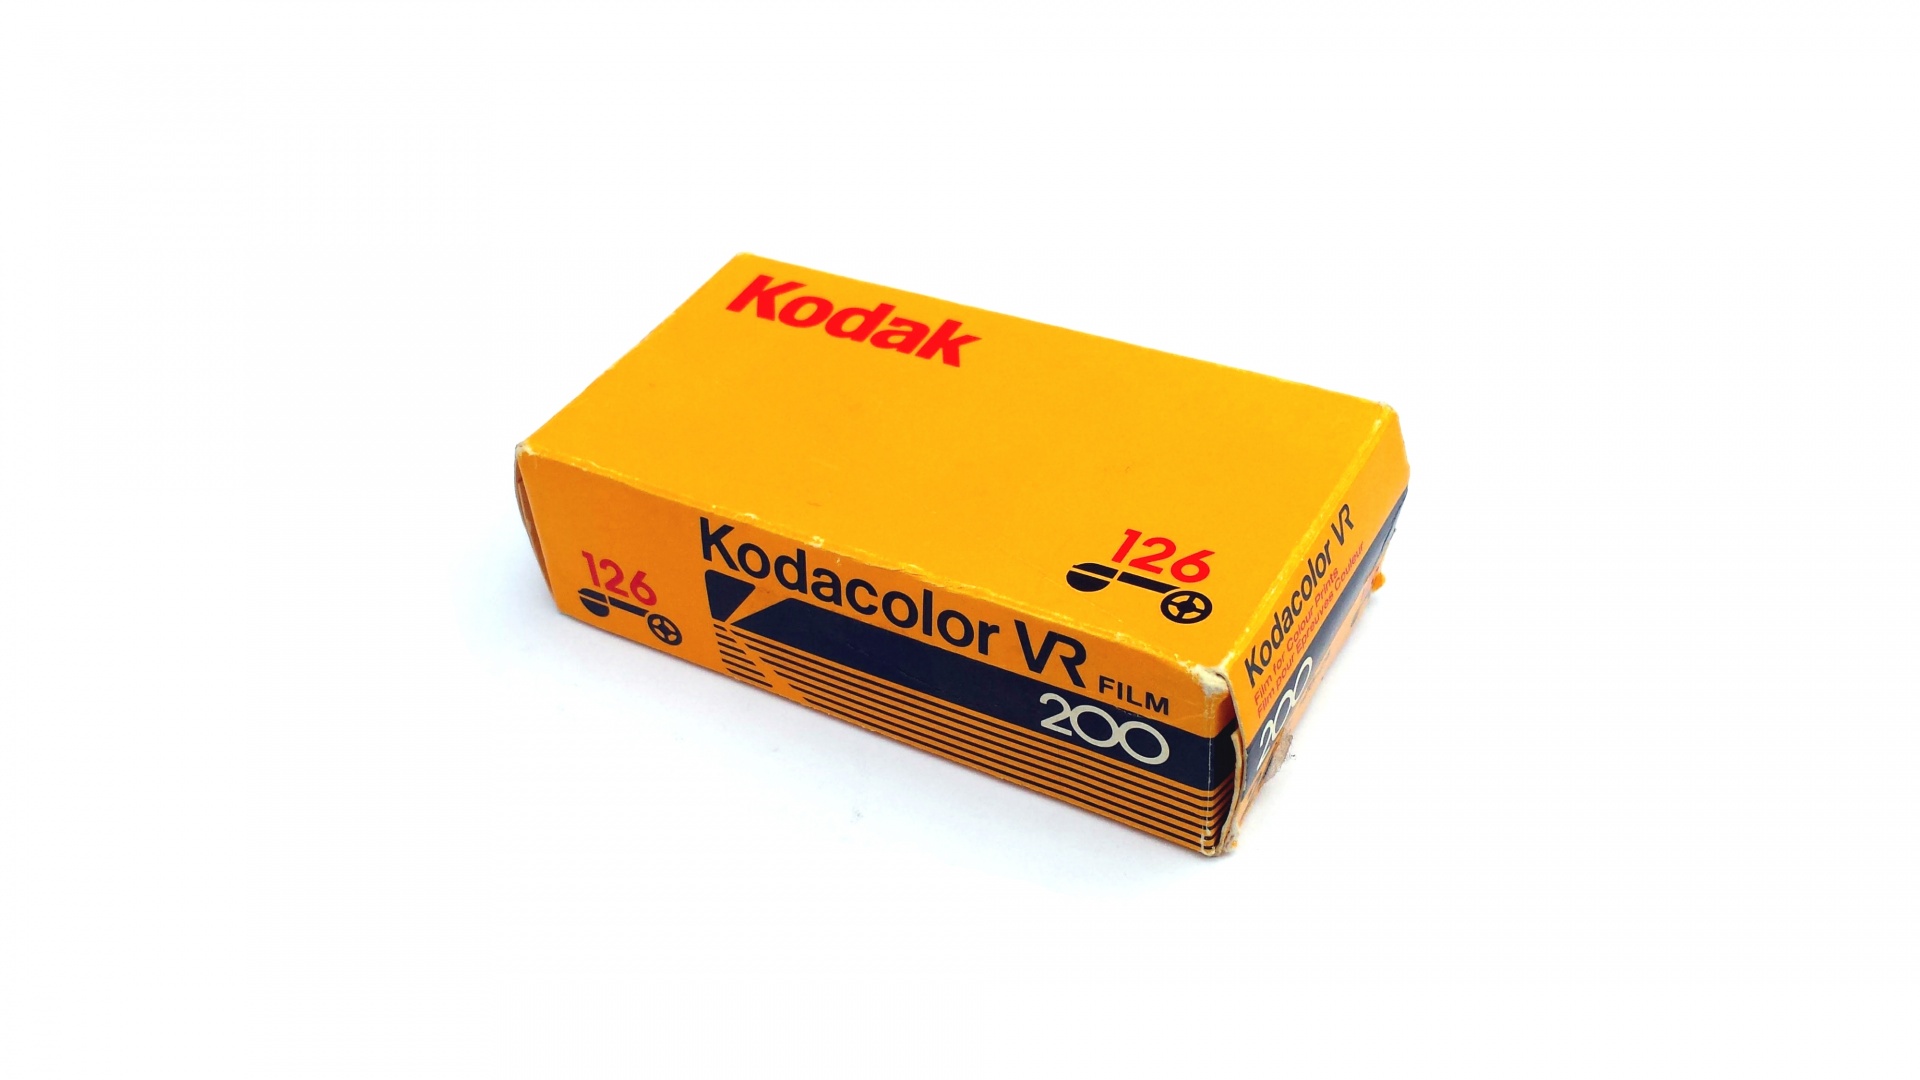 Kodak 126 Film Box